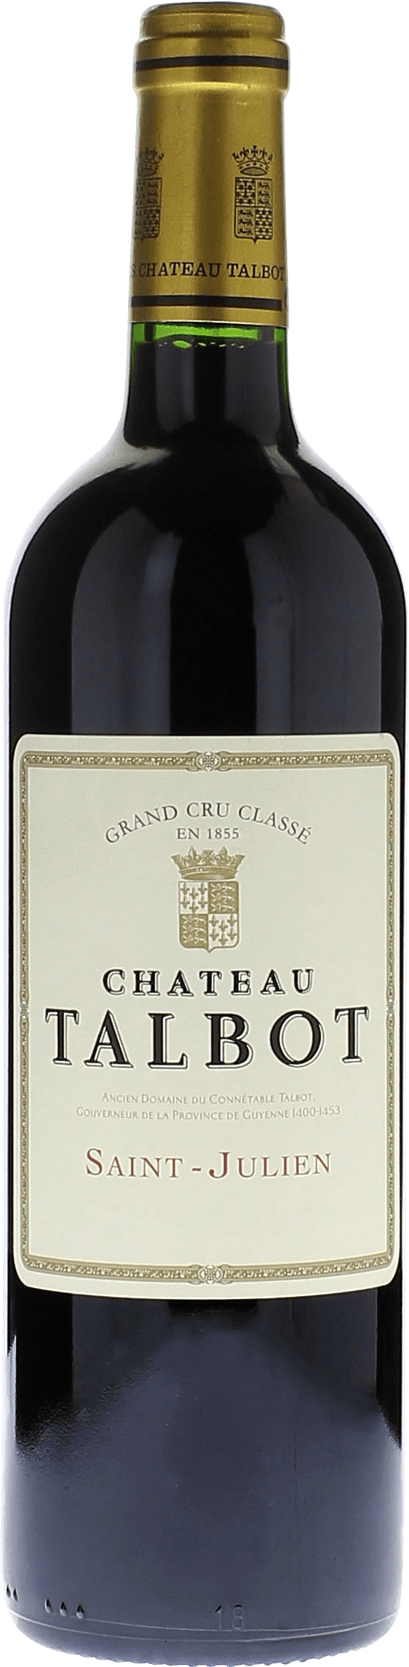 Talbot 1999 4me Grand cru class Saint-Julien, Bordeaux rouge